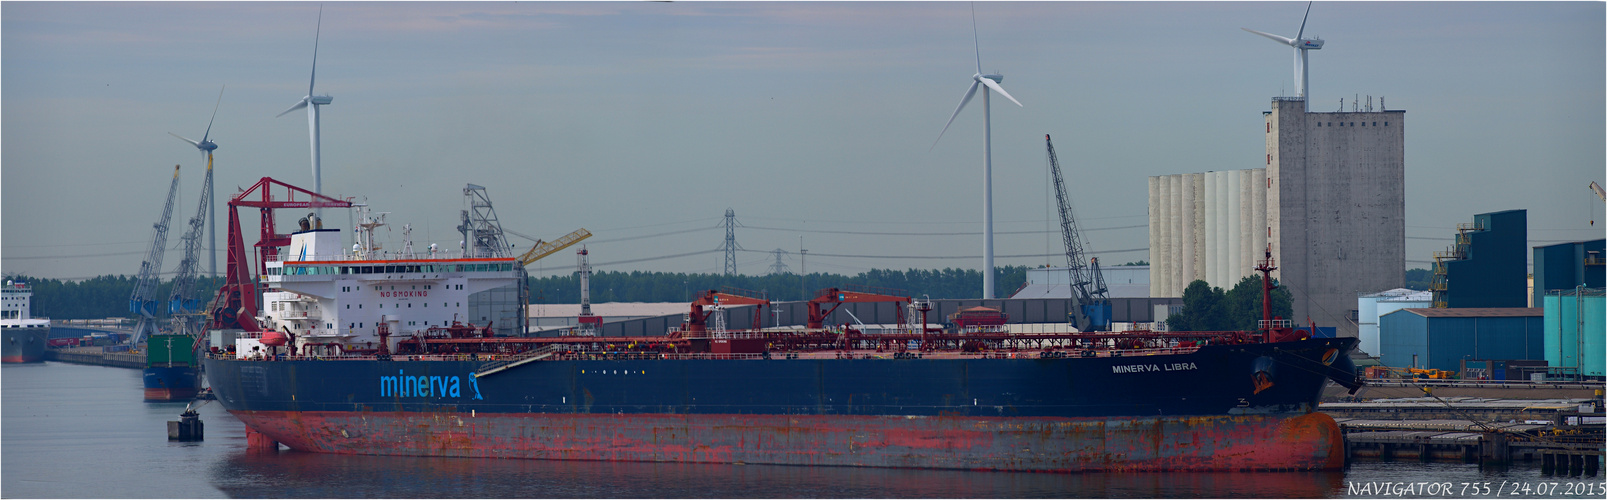 MINERVA LIBRA / Oil Products Tanker / Rotterdam